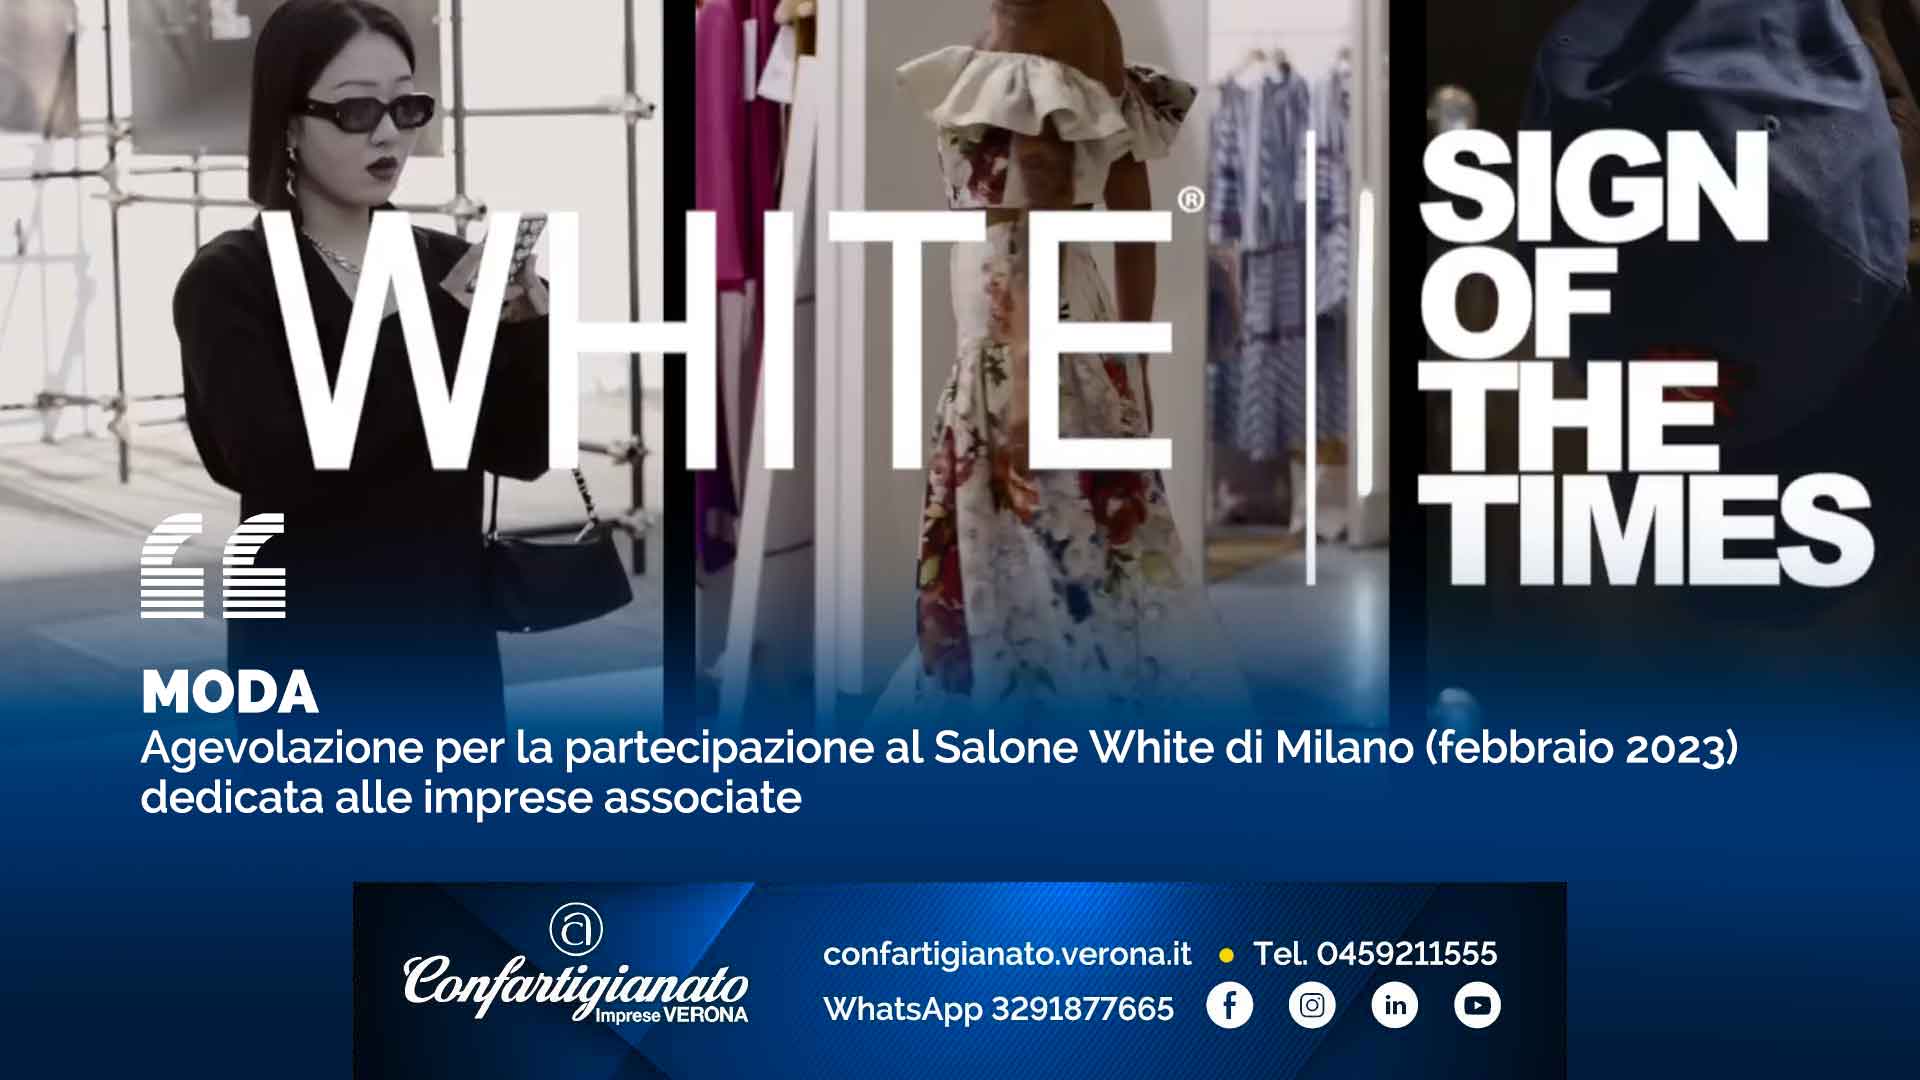 MODA – Agevolazione per la partecipazione al Salone White di Milano (febbraio 2023) dedicata alle imprese associate